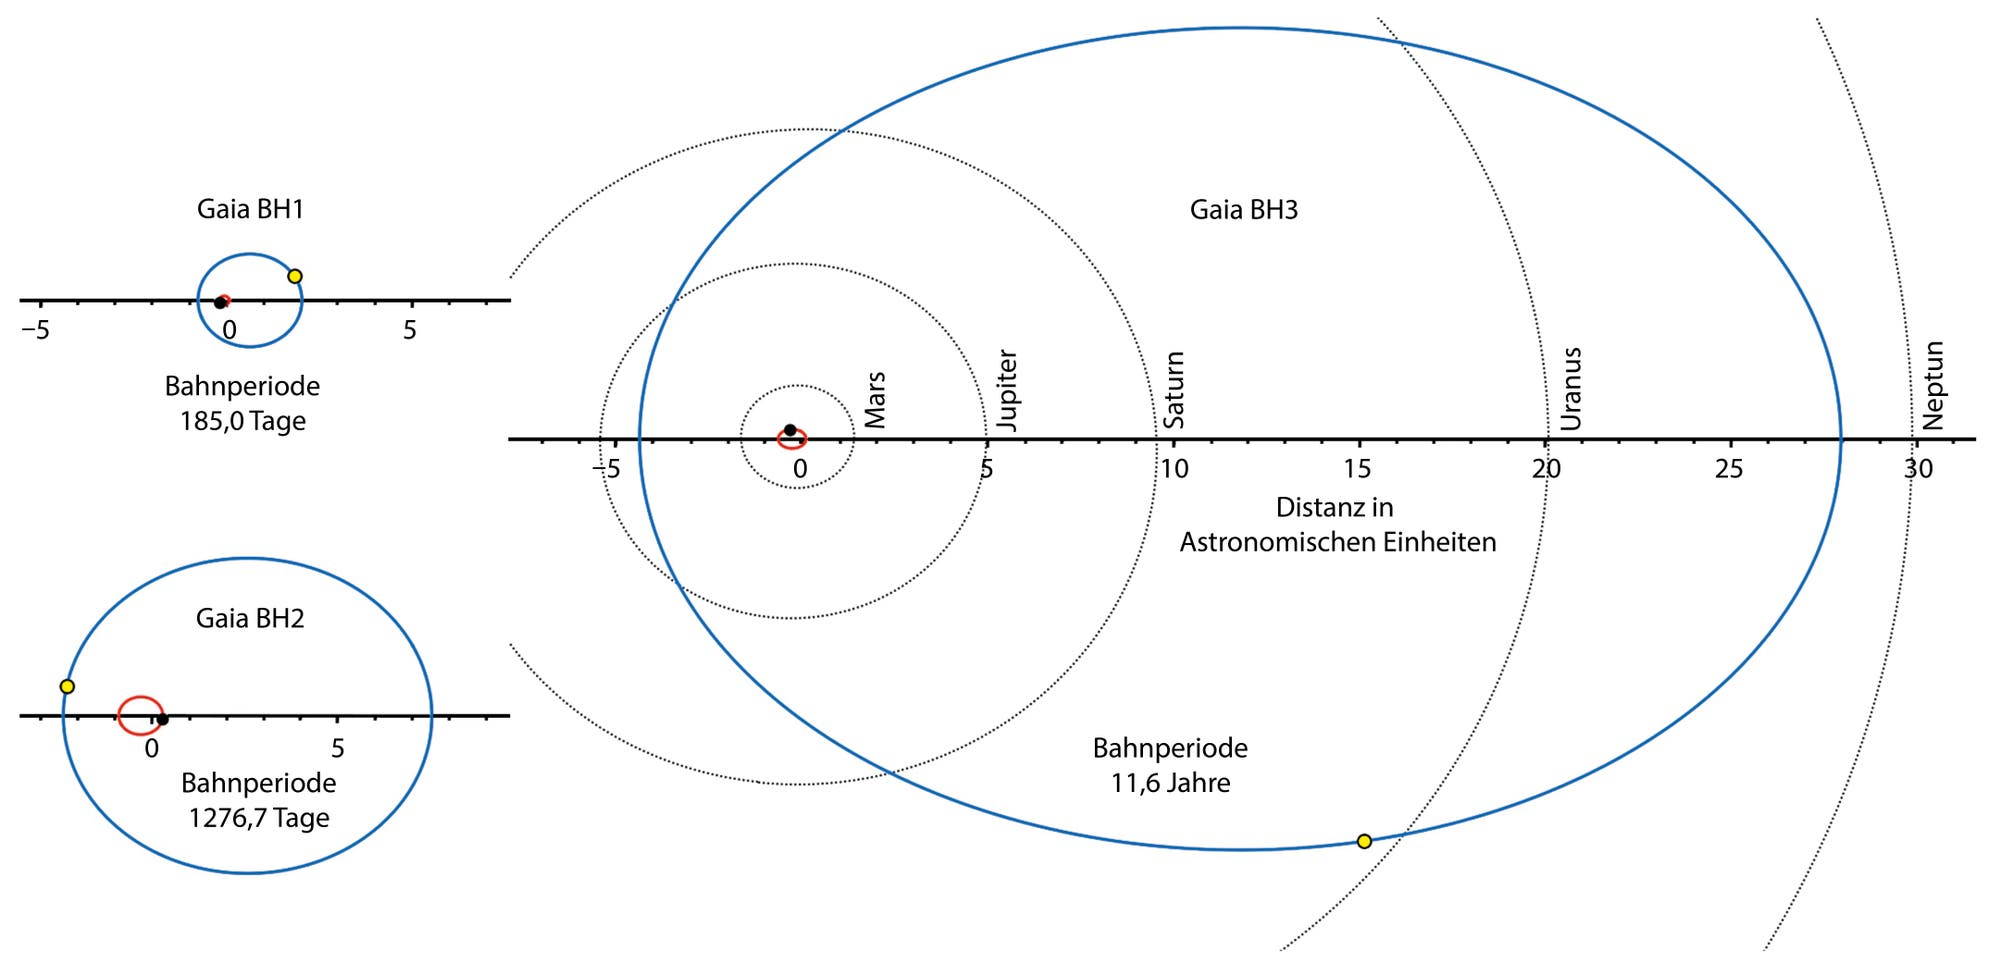 Übersicht der drei mit gaia gemessenen Schwarzen Löcher Gaia BH1 bis BH3.